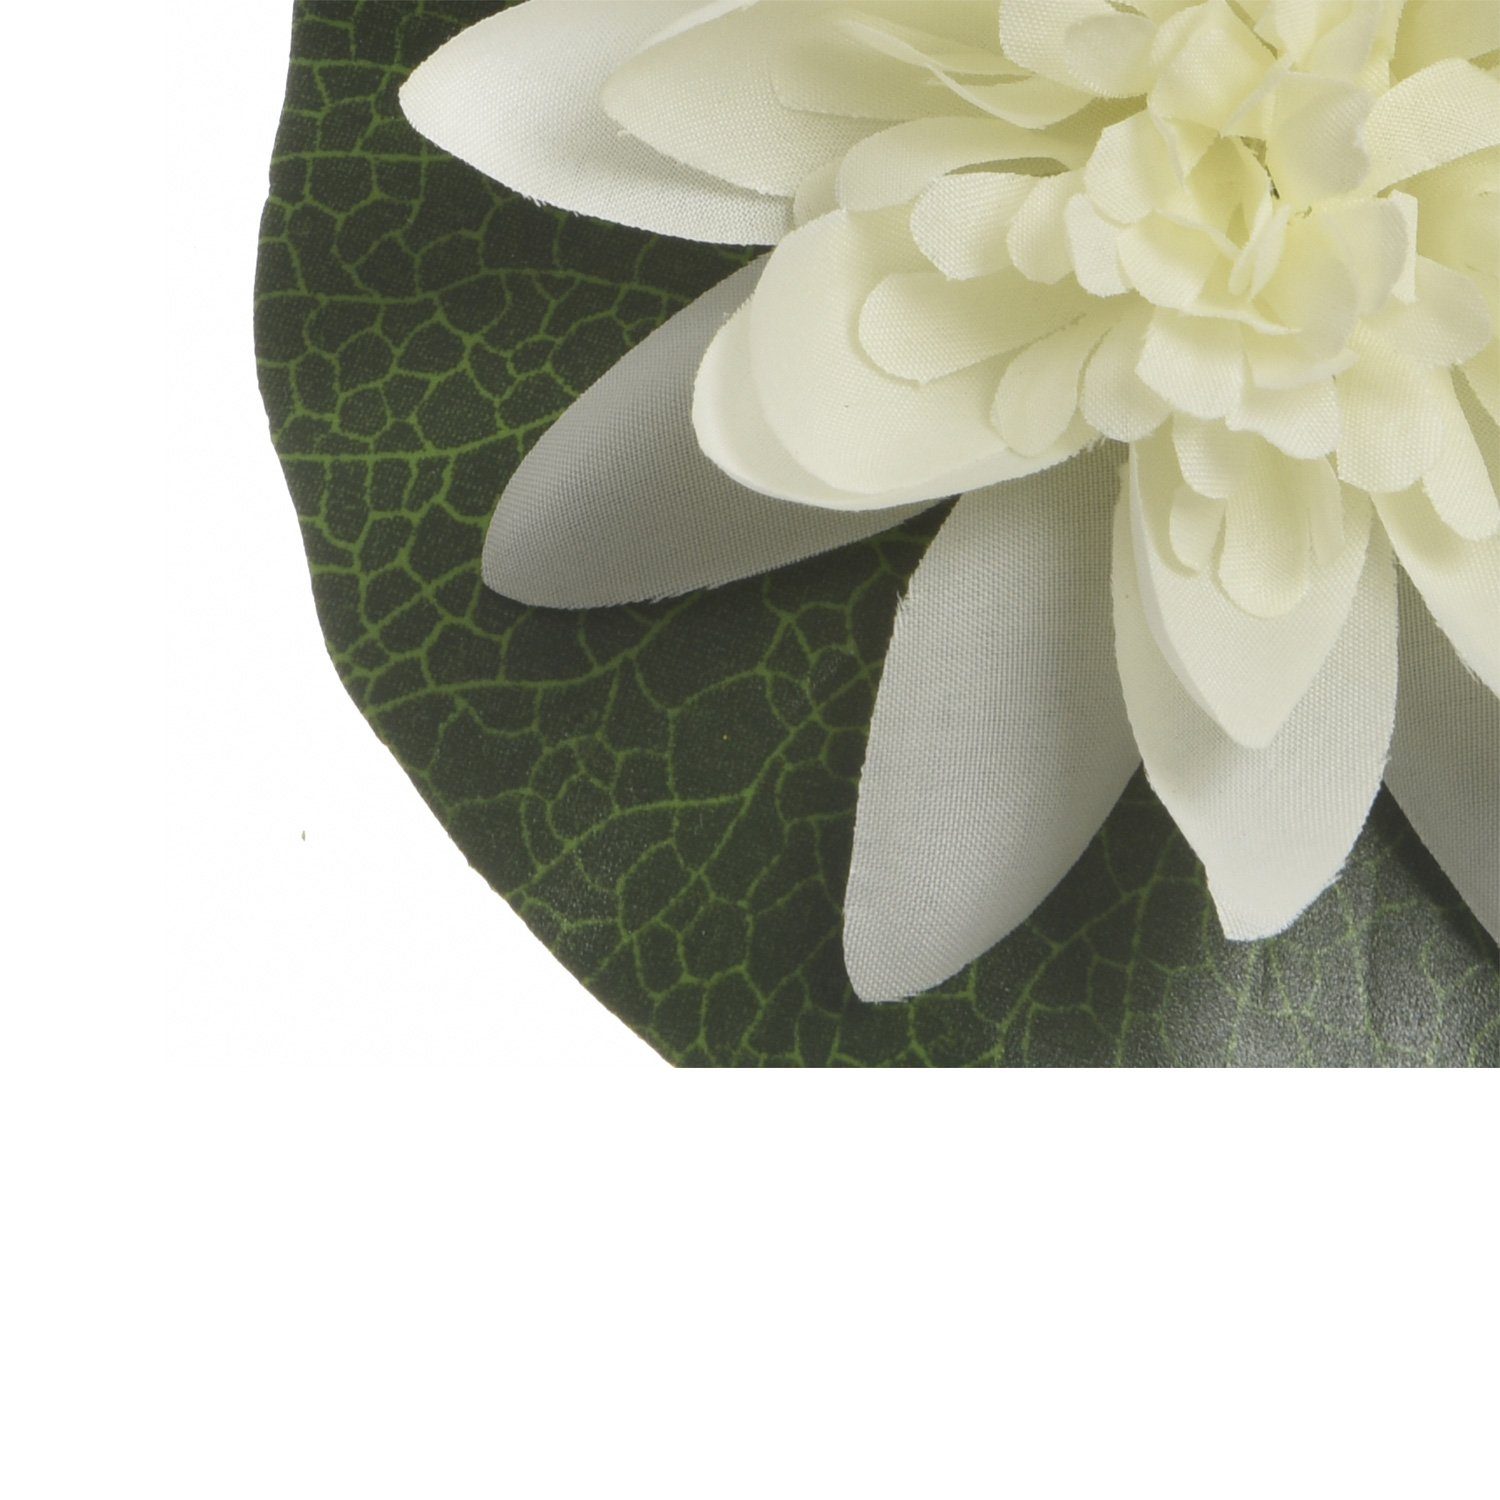 MARELIDA, Kunstblume Kunstblume schwimmend, cm 13cm Höhe Teichblume Lotusblüte Seerose Lotusblume 4 D: